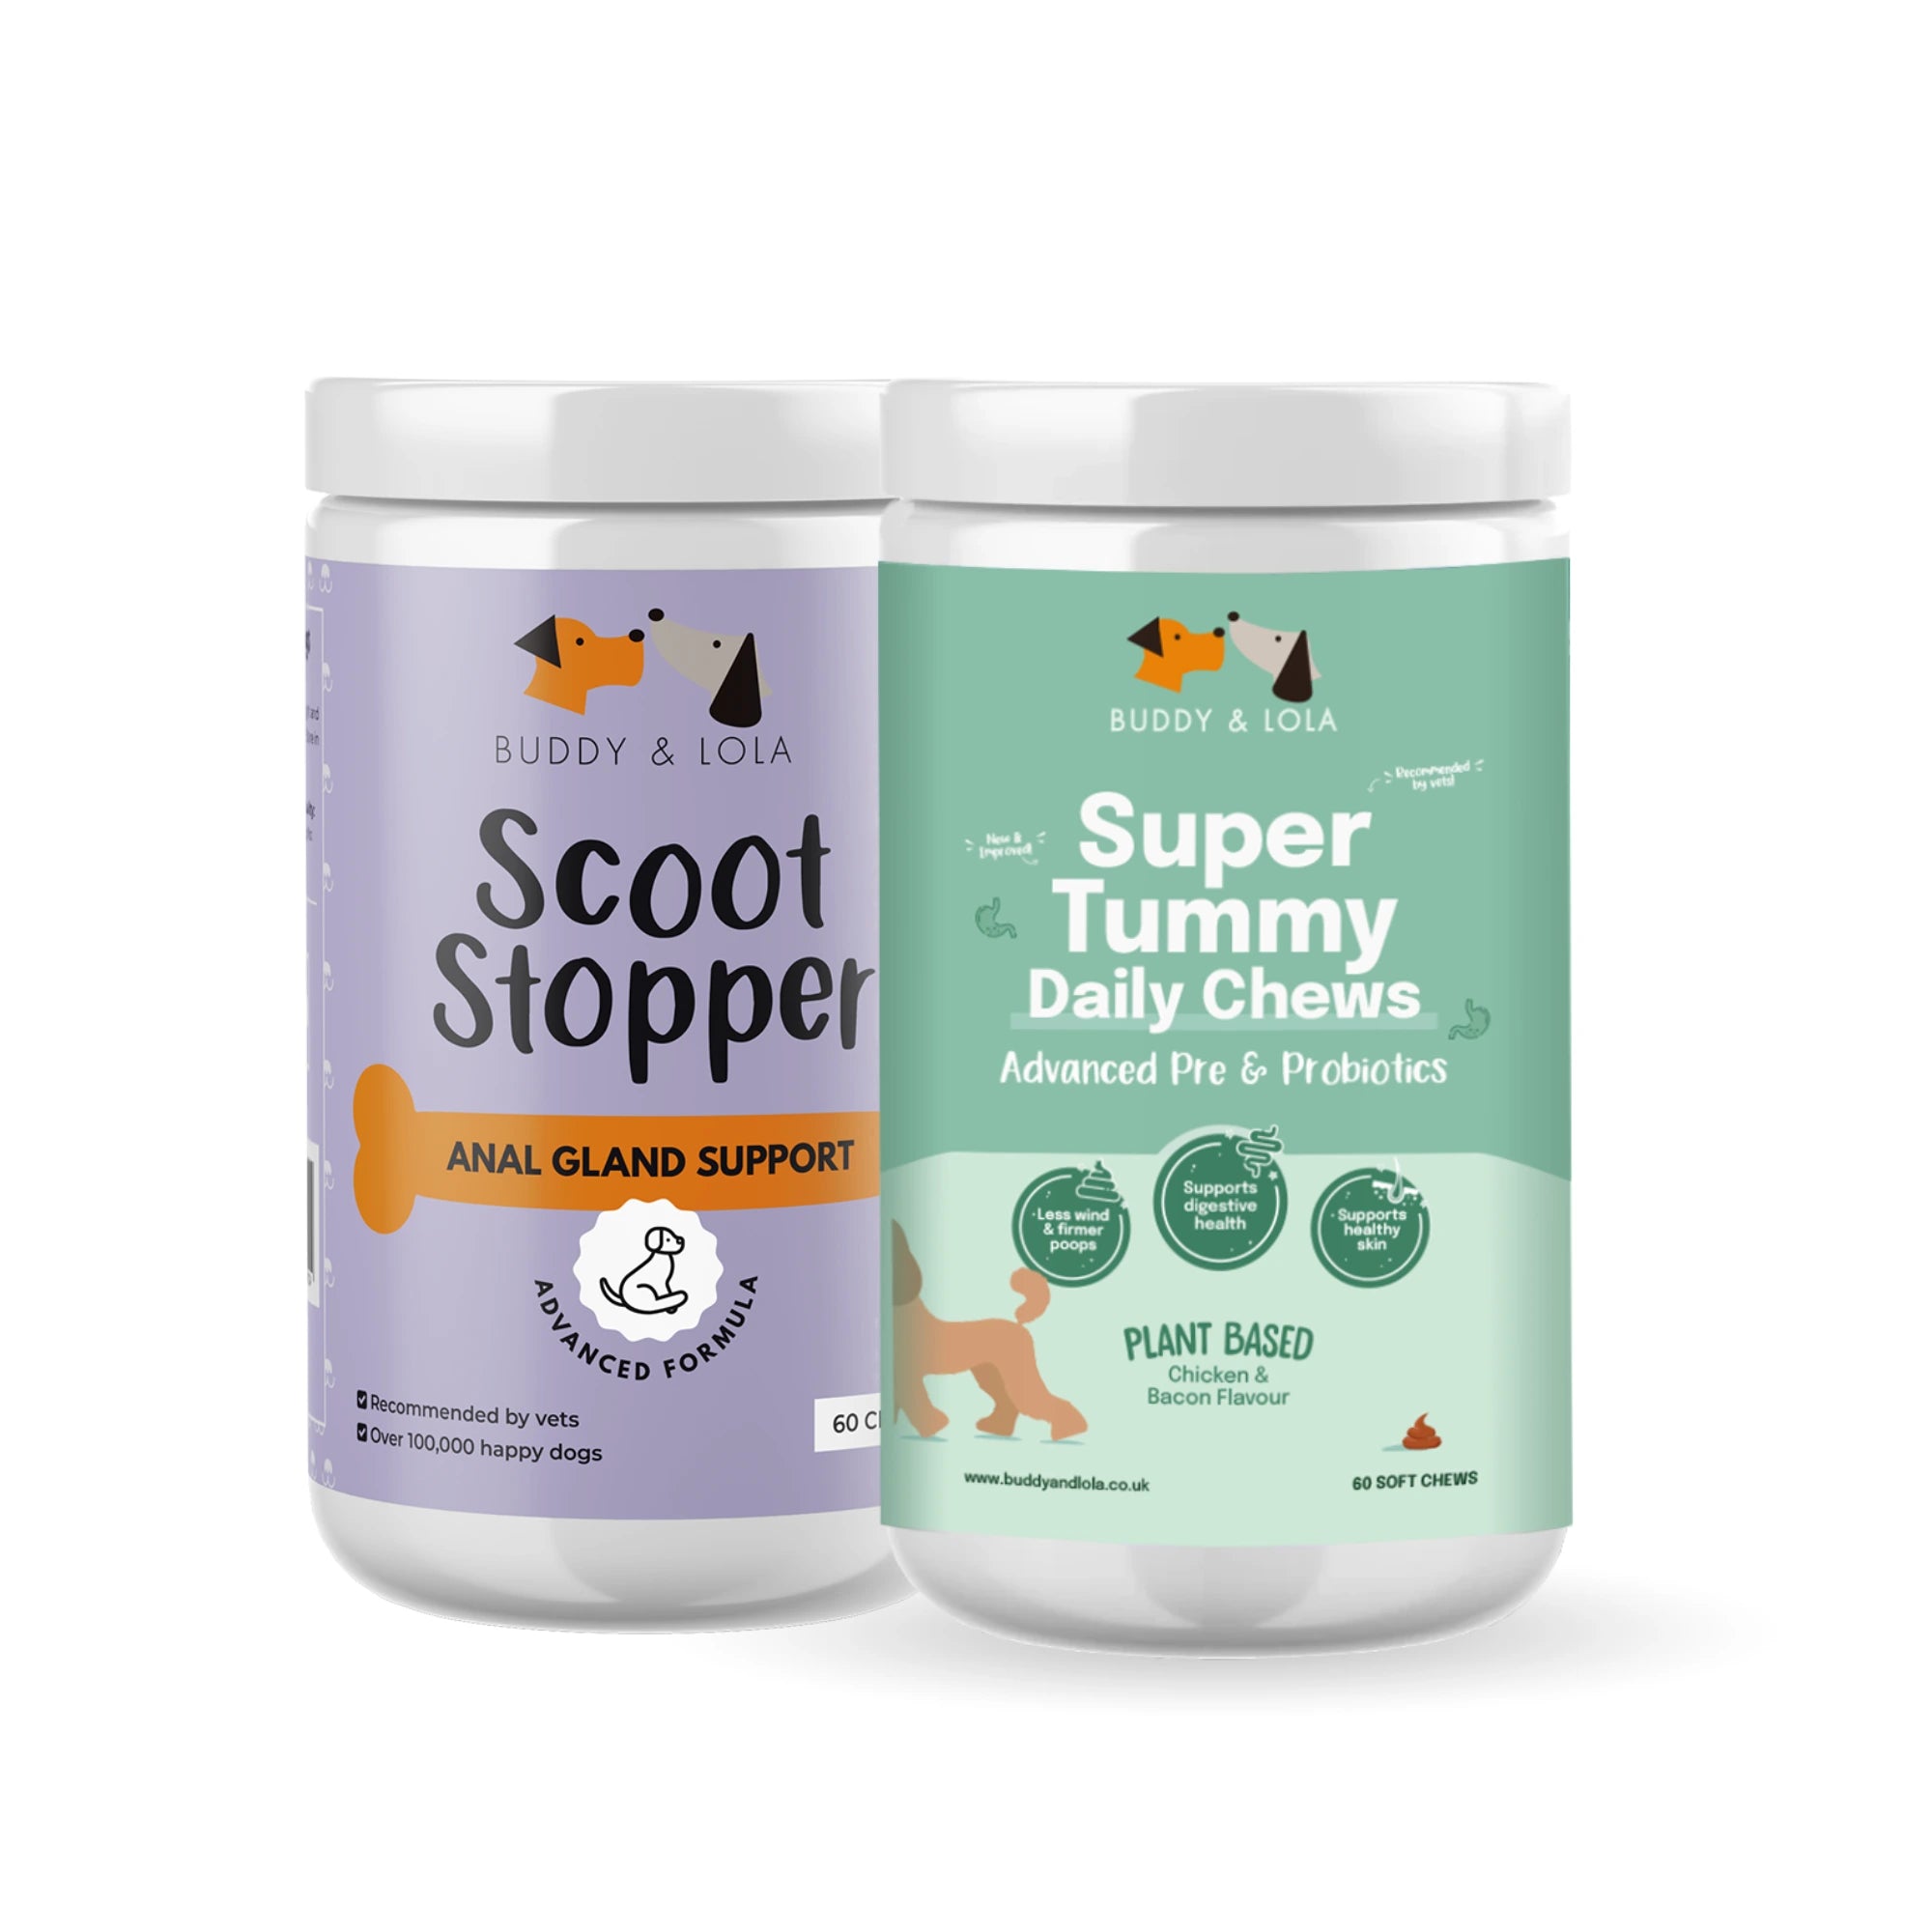 Super Tummy & Scoot Chew Bundle